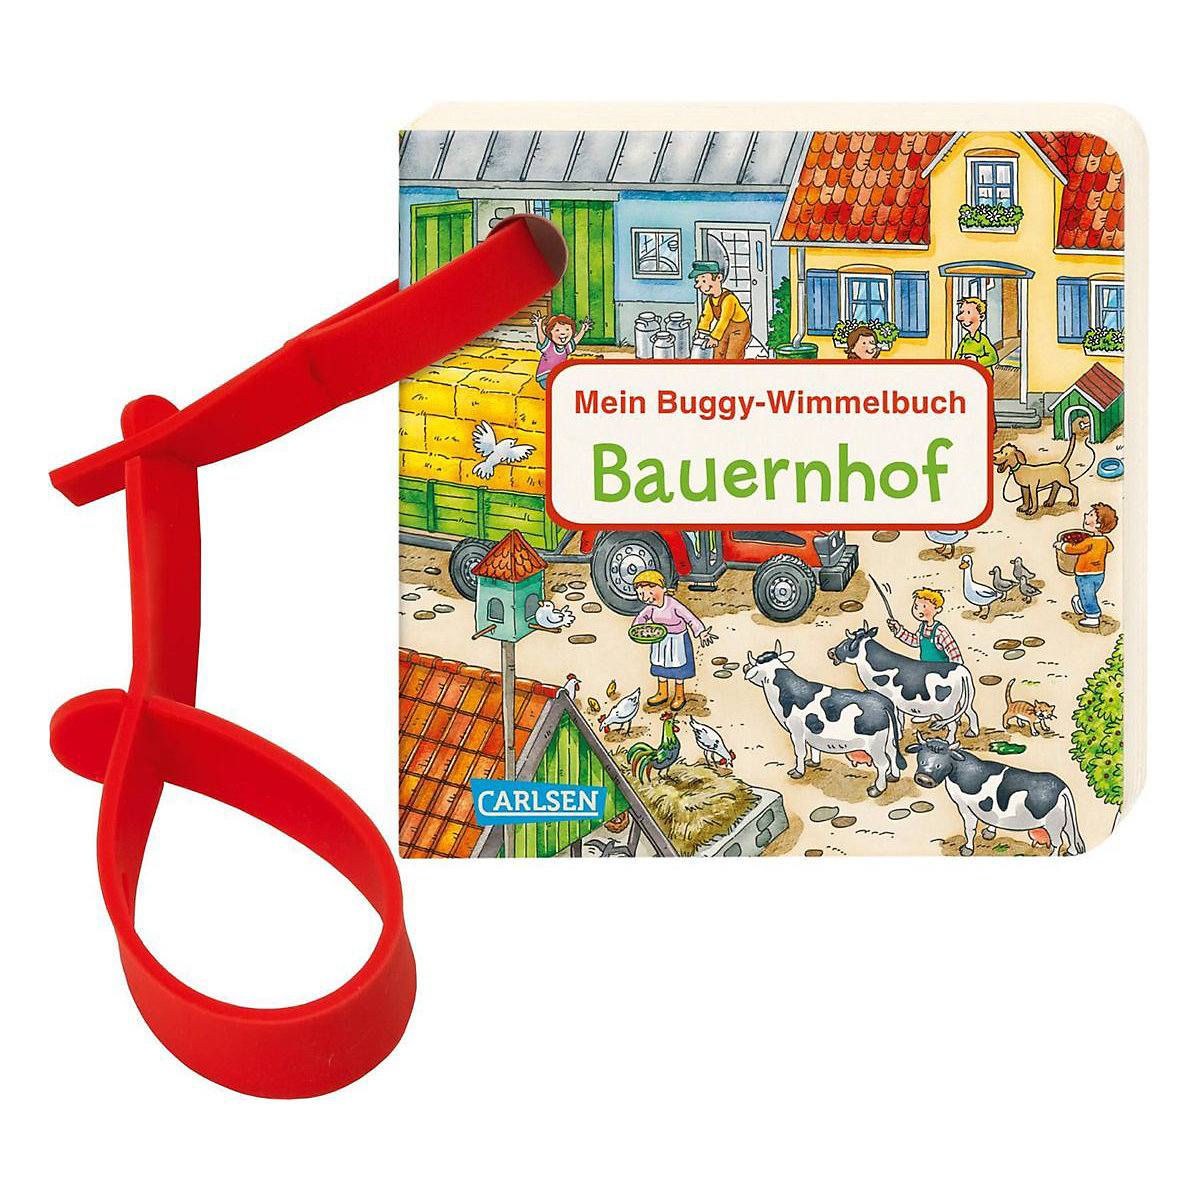 Mein Buggy-Wimmelbuch Bauernhof